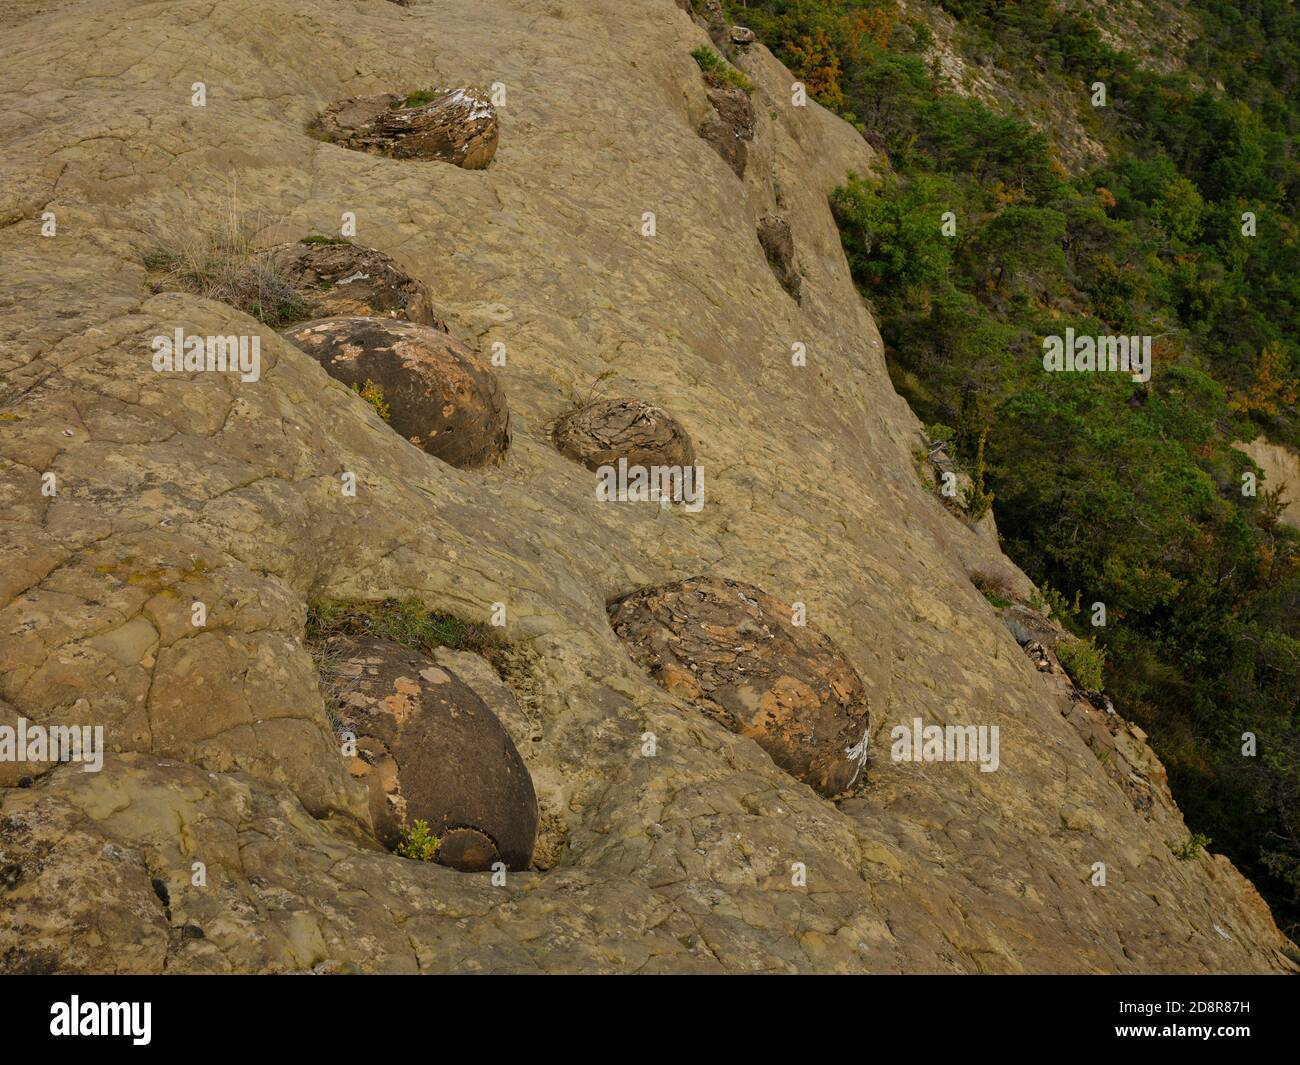 Rätselhafte Ursprünge sind diese Sandsteinkugeln in eine weichere, erodiertere Sandsteinschicht eingebettet. Saint-André-de-Rosans, Hautes-Alpes, Frankreich. Stockfoto